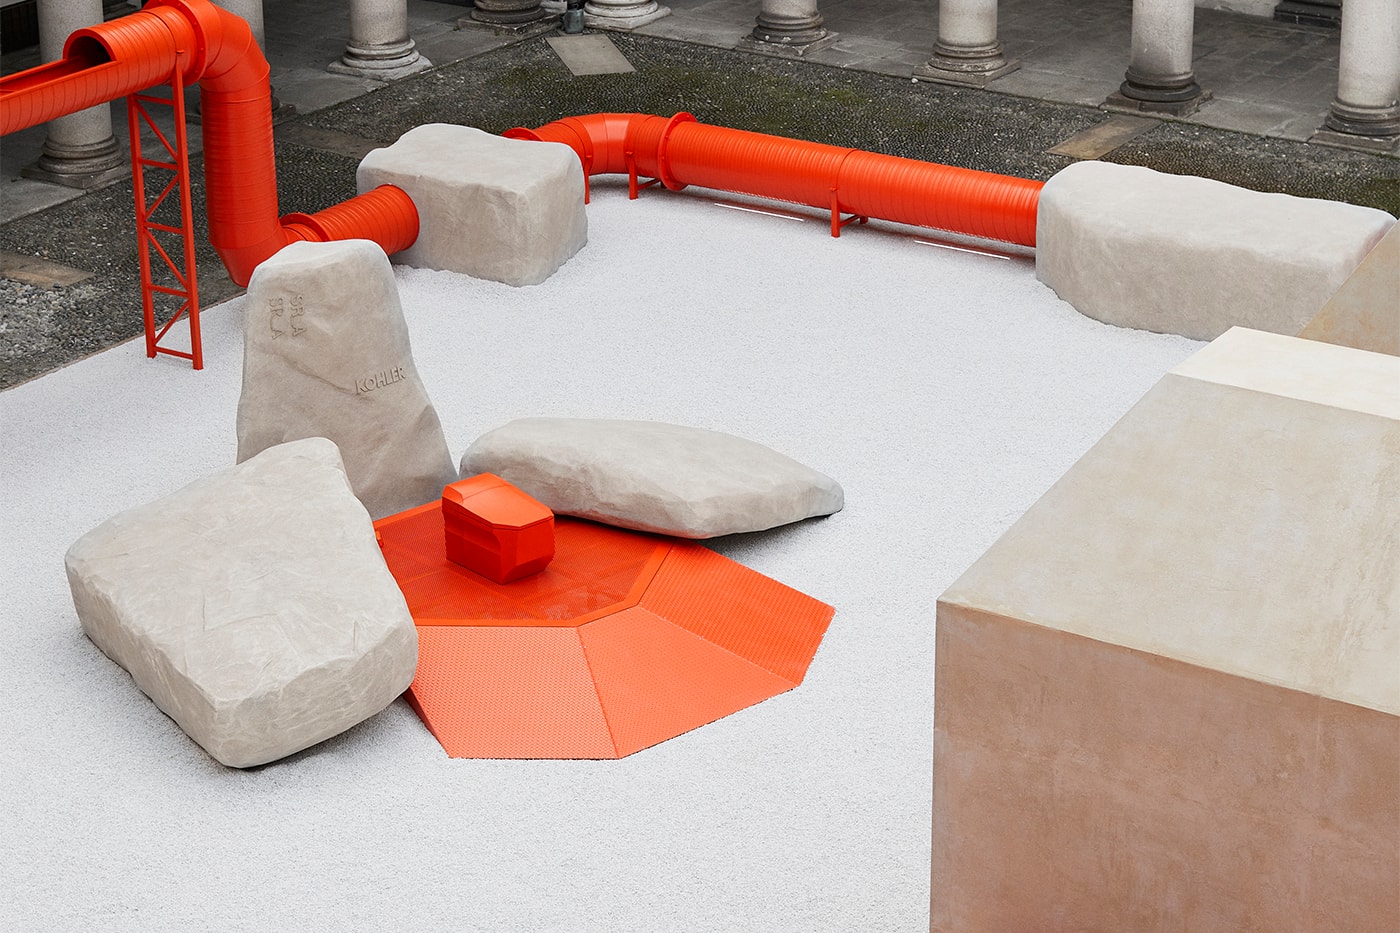 Сэмюэл Росс создает лабиринт из оранжевых трубок в стиле брутализма внутри итальянского палаццо 